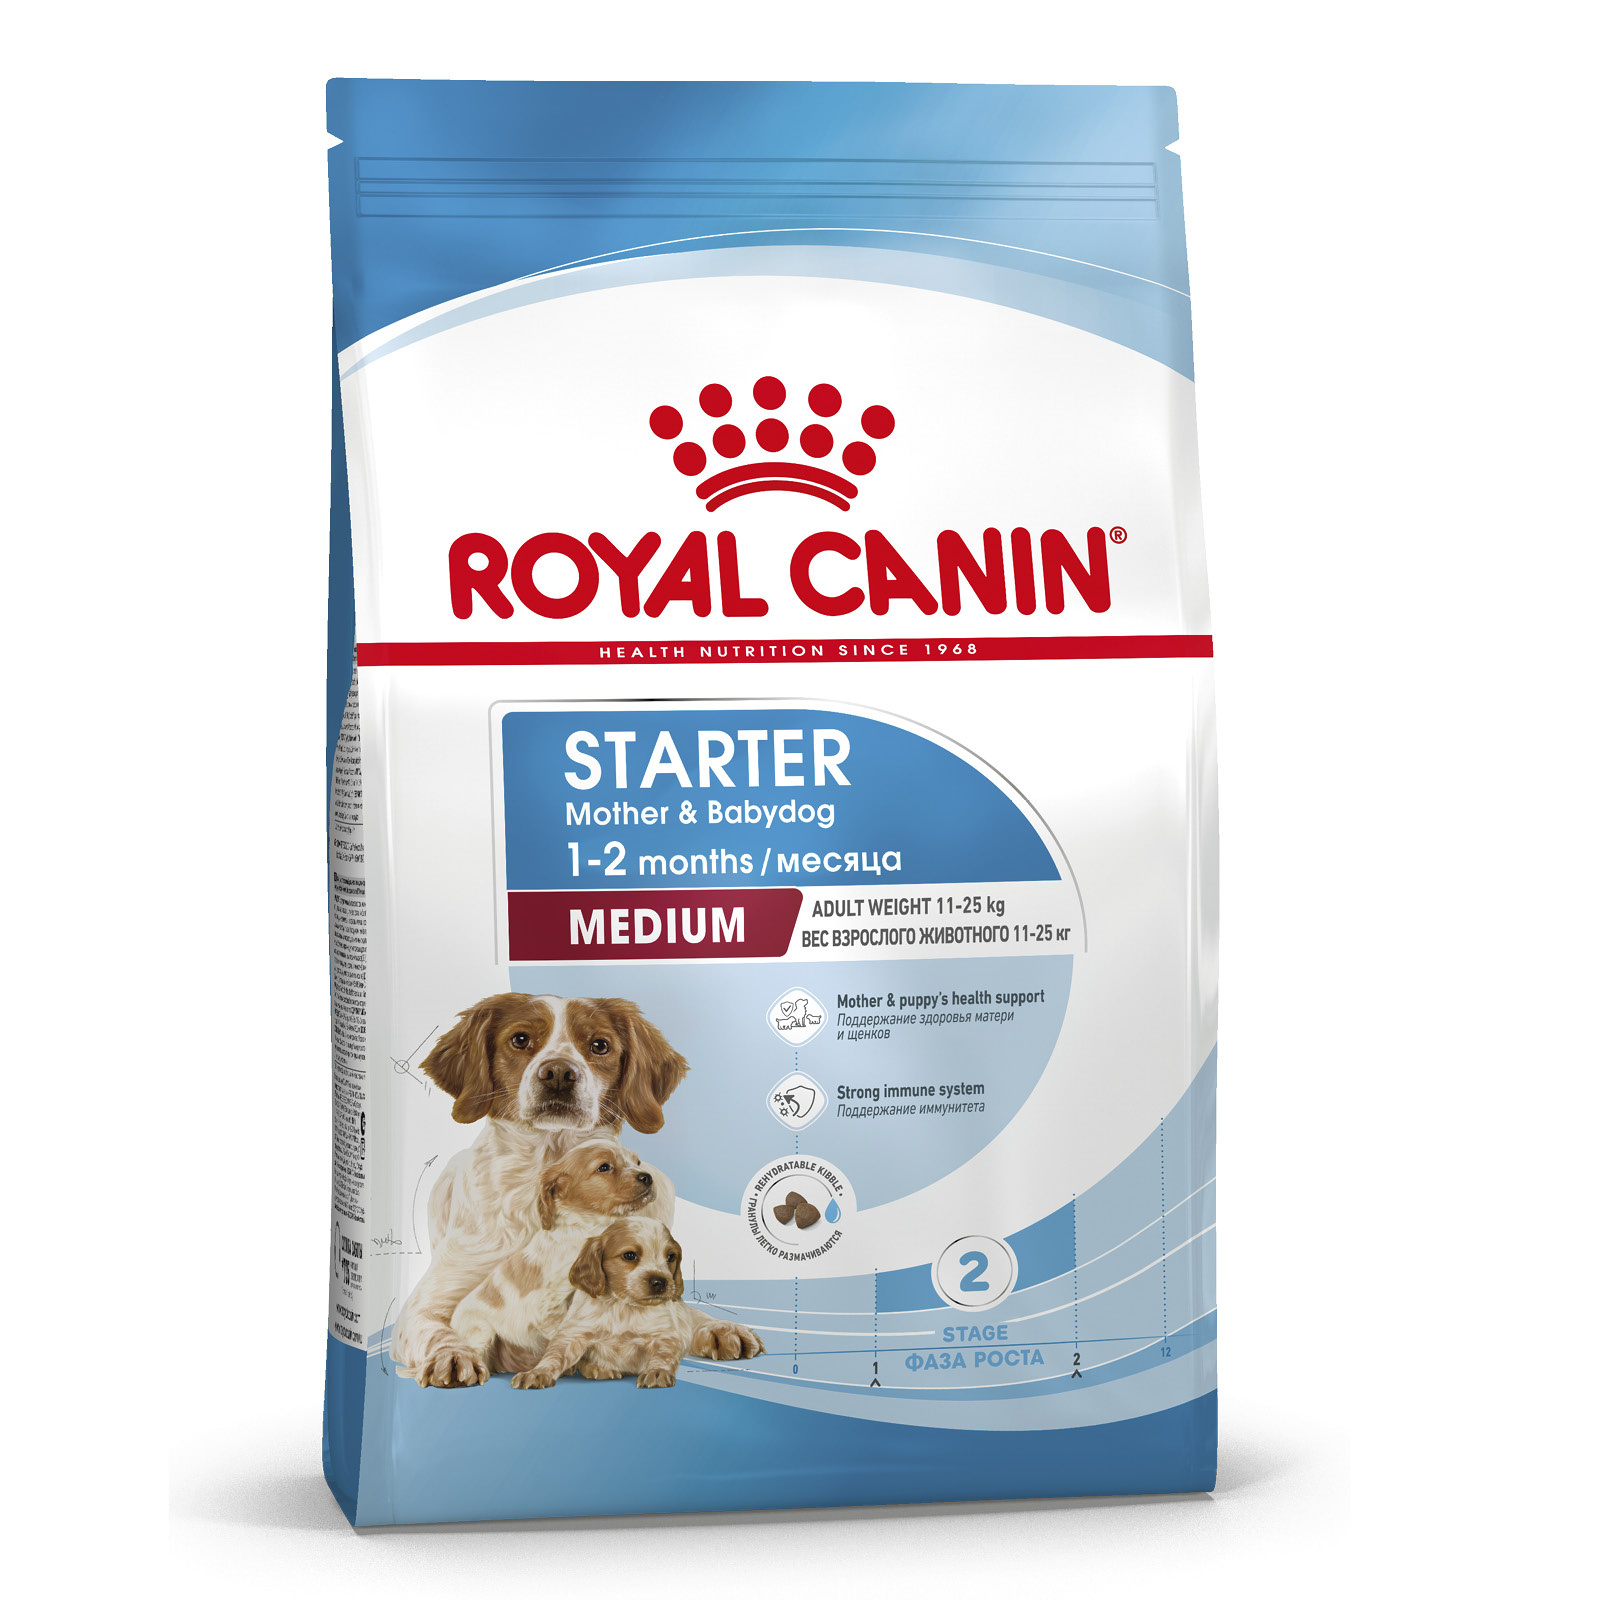 Royal Canin Корм Royal Canin для щенков средних пород от 3 недель до 2 месяцев, беременных и кормящих сук (12 кг) 23904